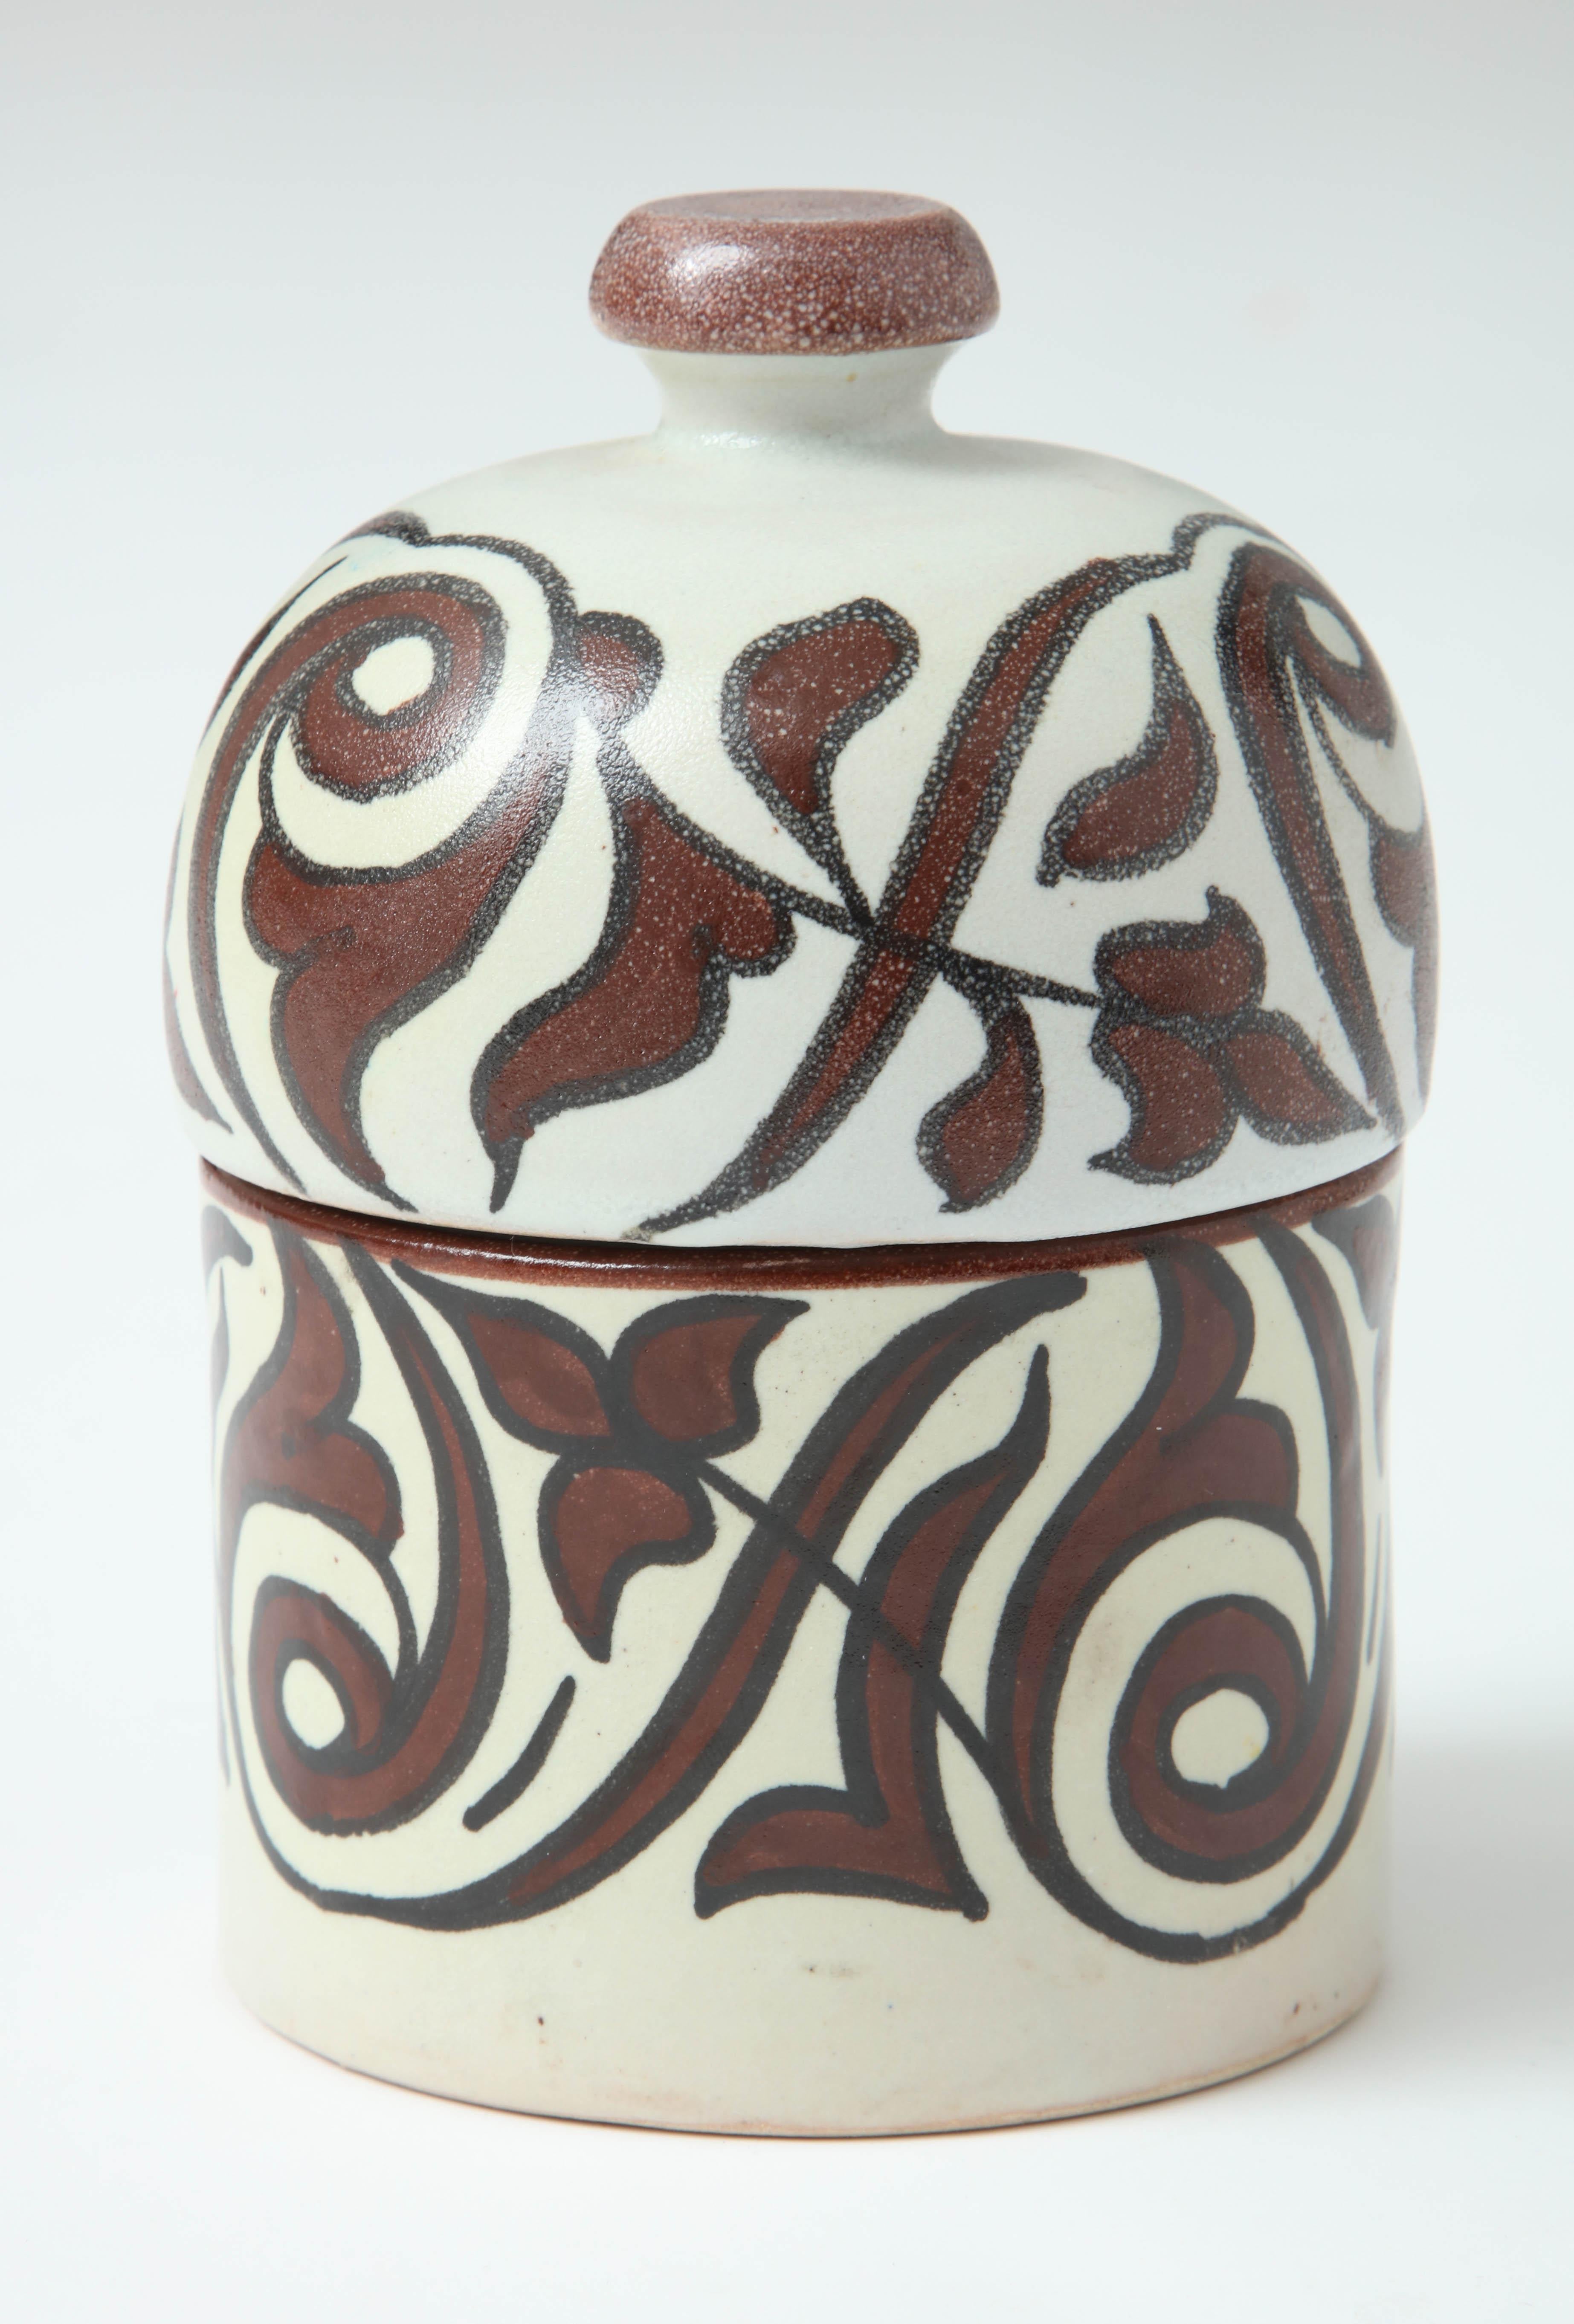 Poterie du Maroc. Inspiré par la poterie suédoise du milieu du siècle, comme celle de Stig Lindberg. Poterie artisanale réalisée par un artiste local à Rabat.